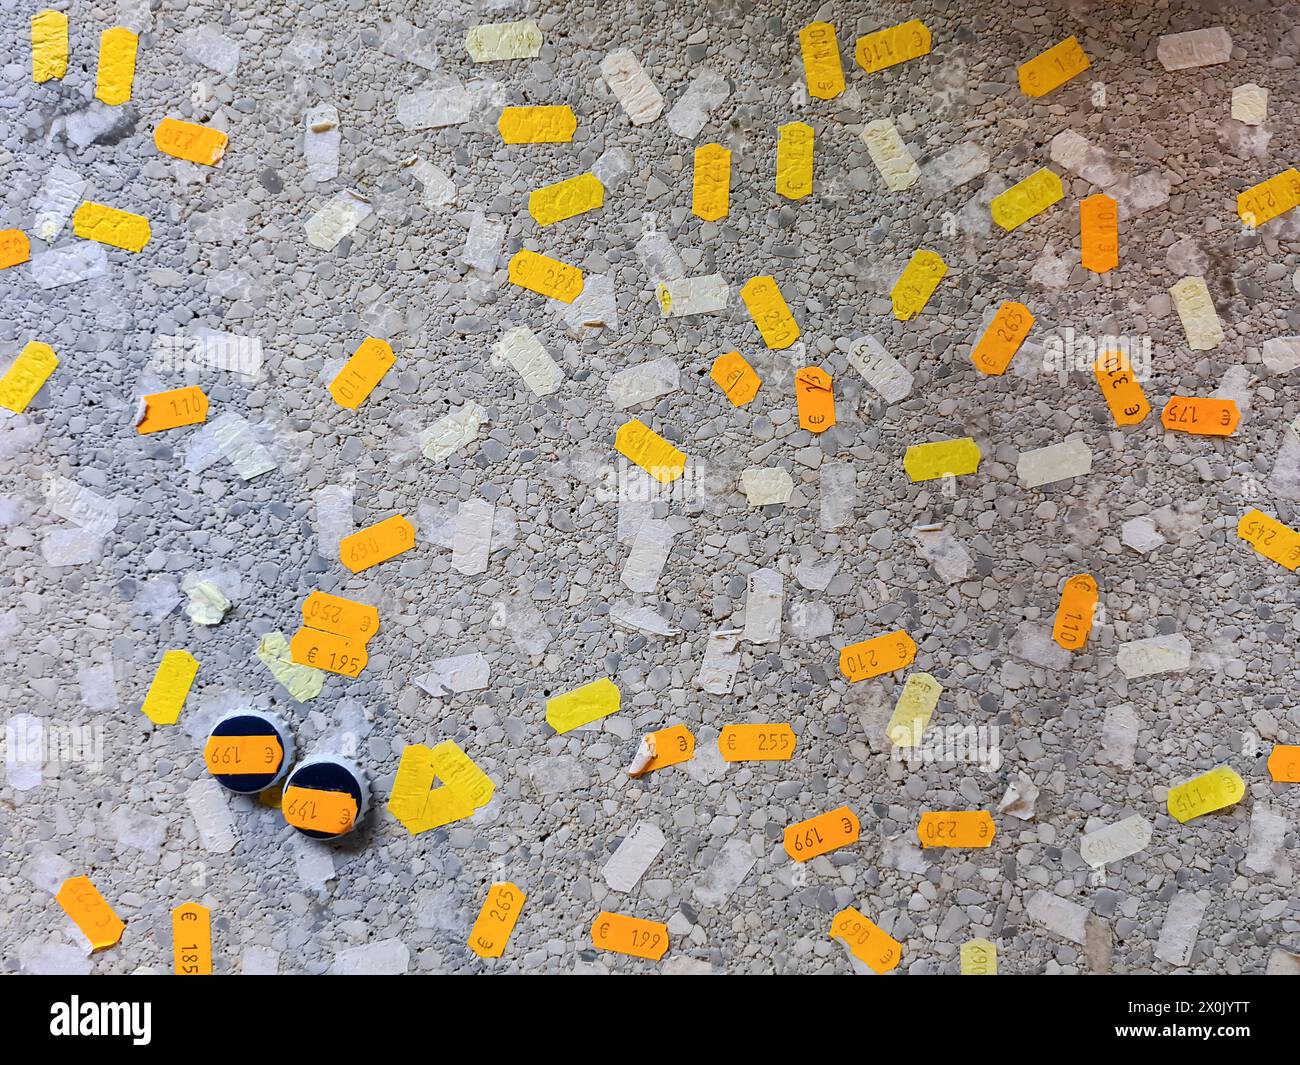 Cartelli dei prezzi in euro che si trovano e si attaccano su una superficie stradale grigia, foto simbolica dei prezzi sul terreno, Spagna Foto Stock